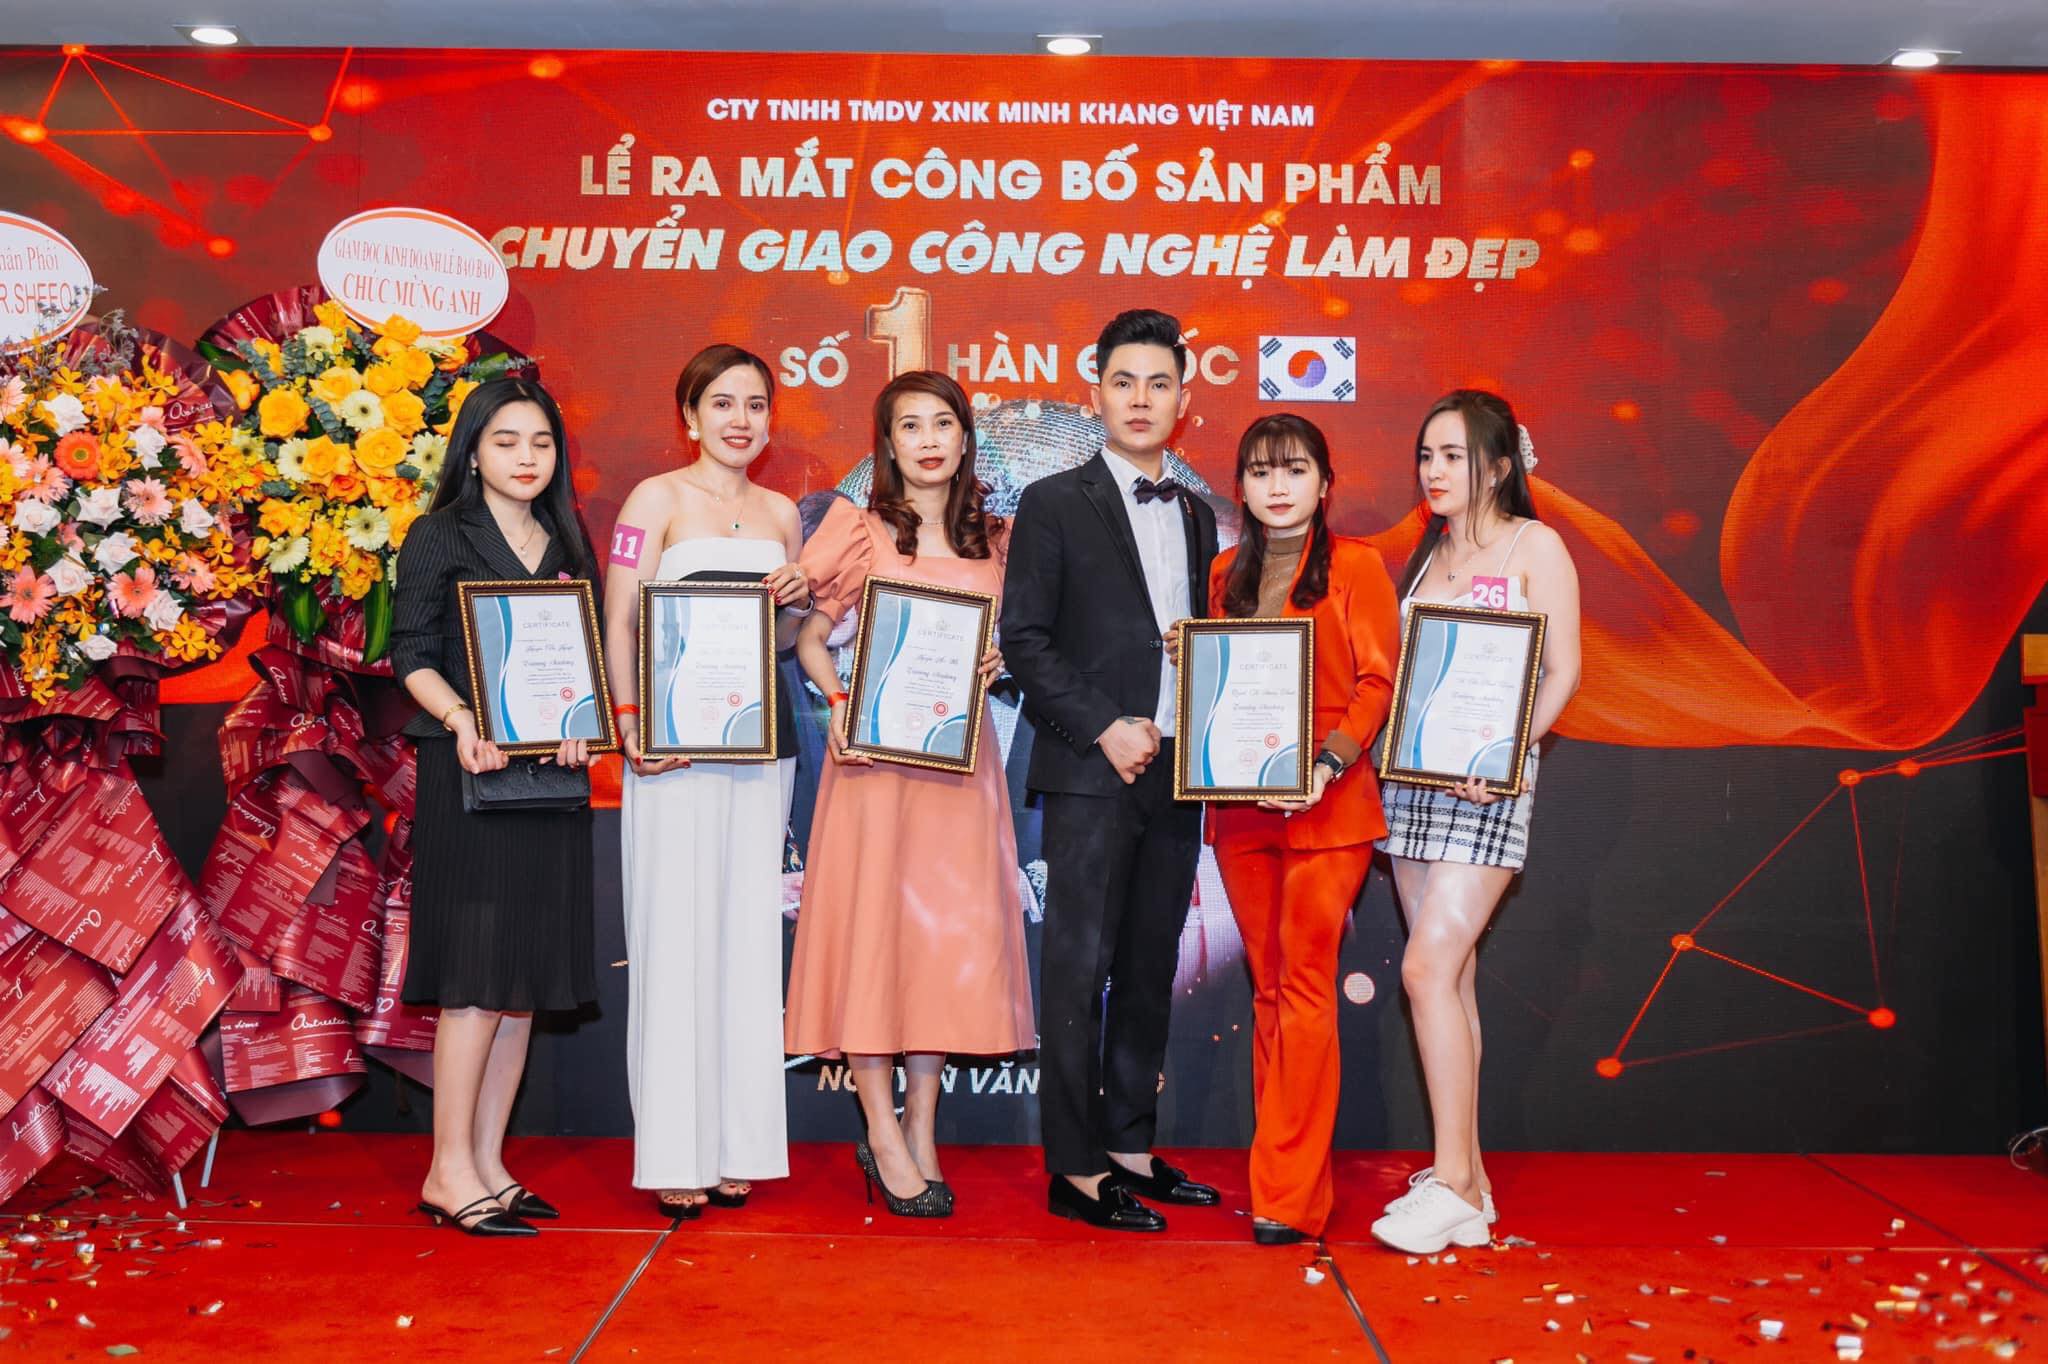 Boss Nguyễn Văn Trung vinh danh những cá nhân xuất sắc của trung tâm thẩm mỹ